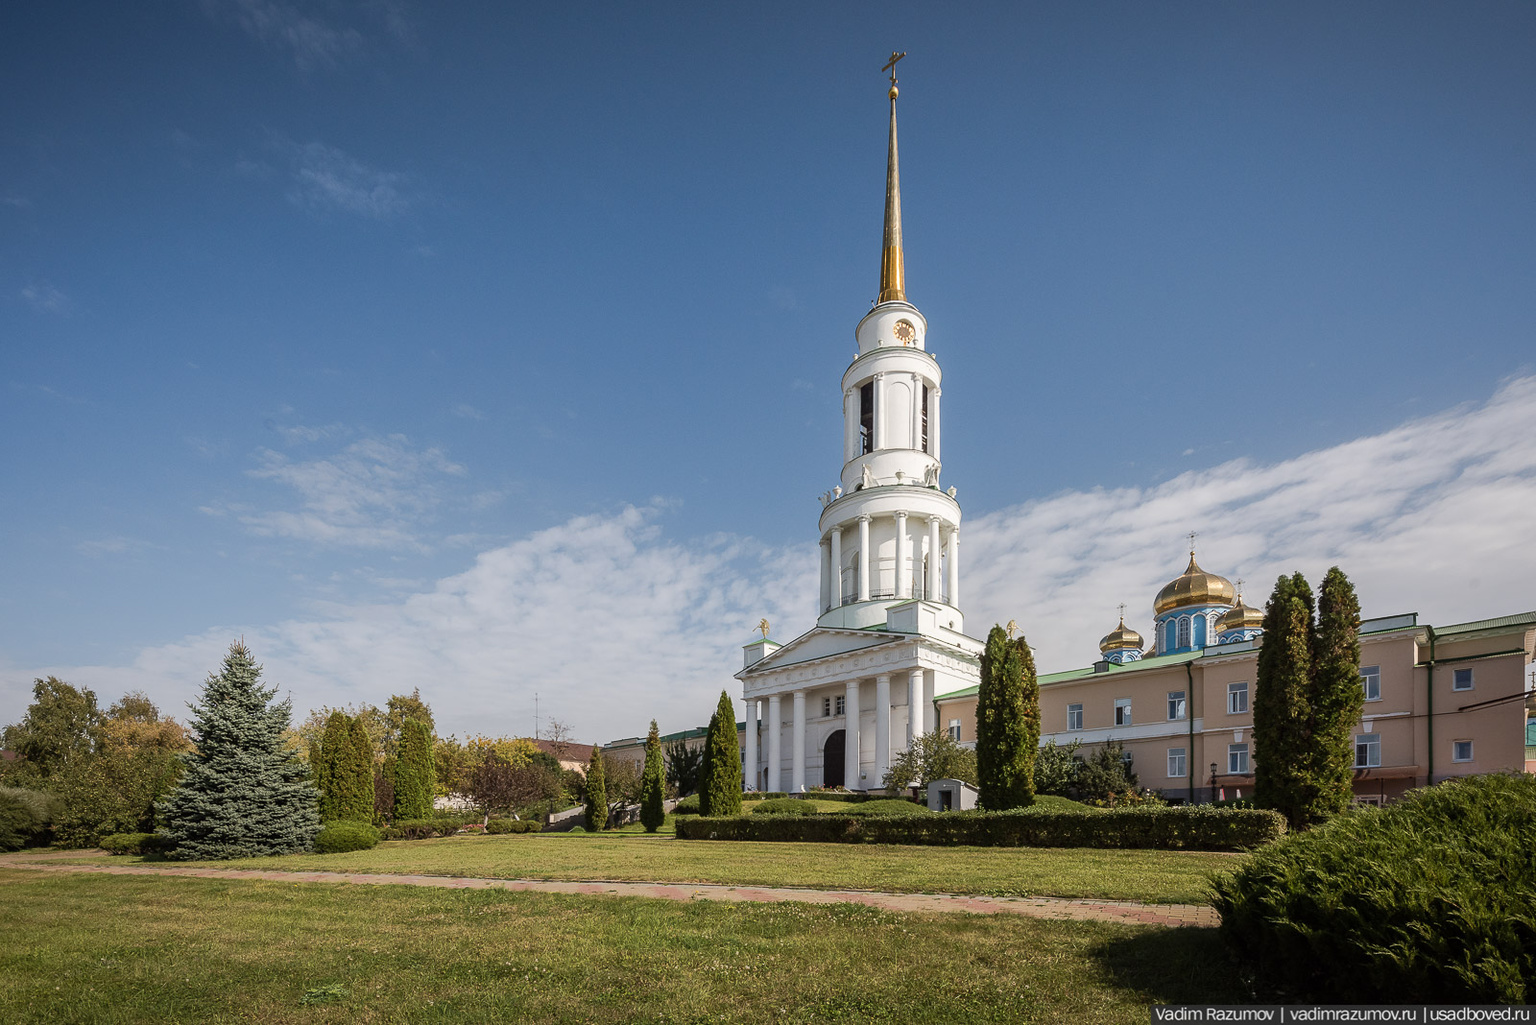 Вид на Задонск и окрестности с колокольни Рождество-Богородицкого монастыря